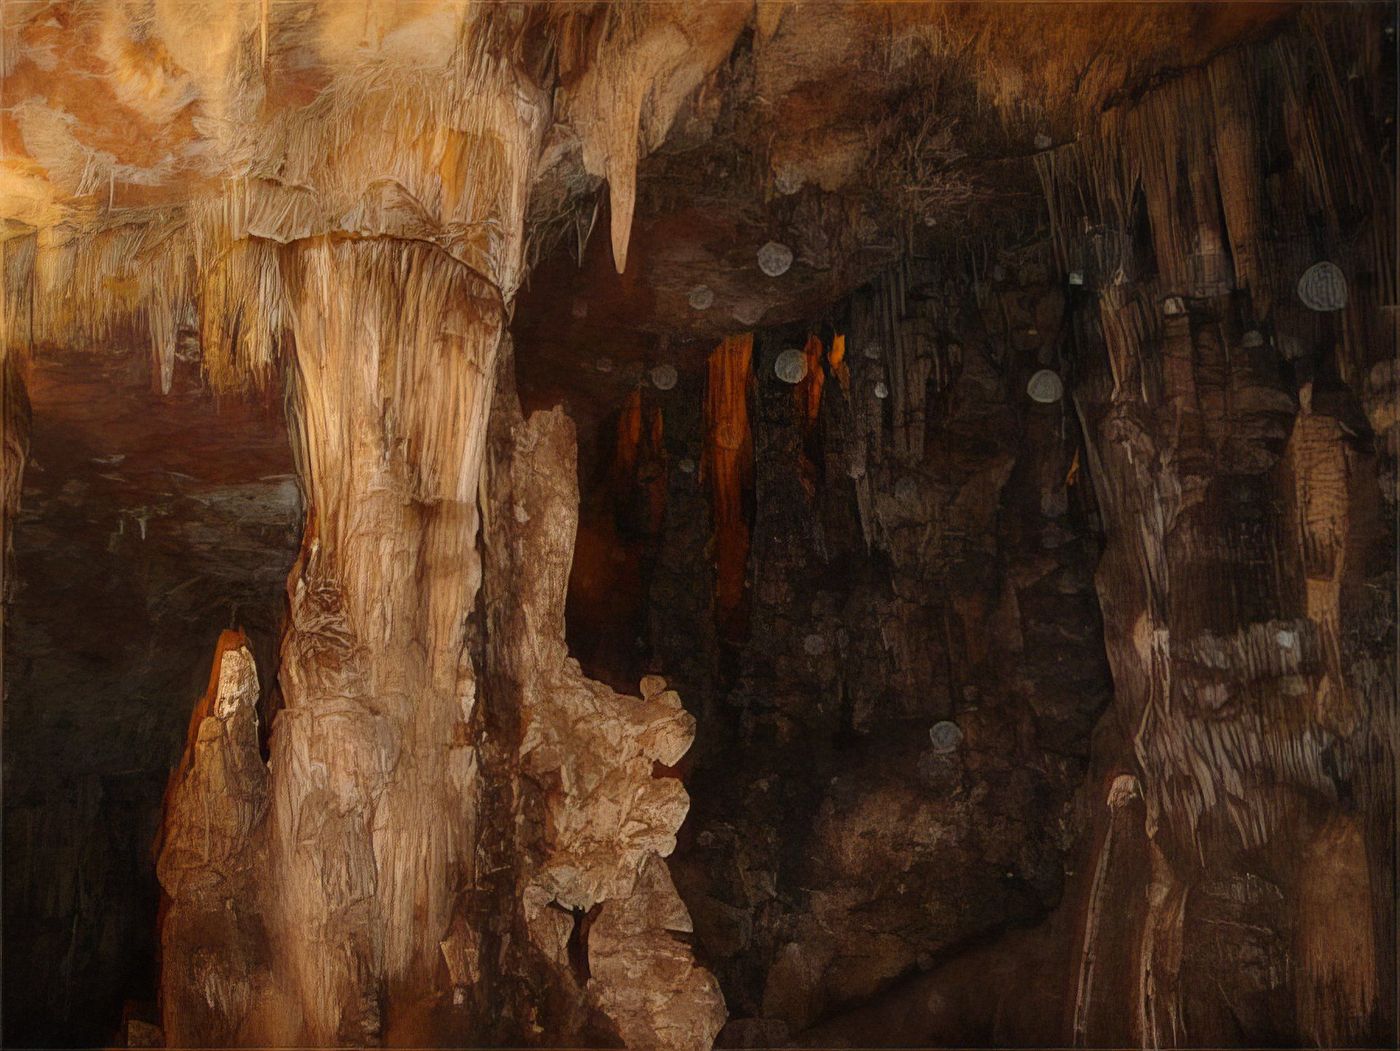 Grottes de tlemcen